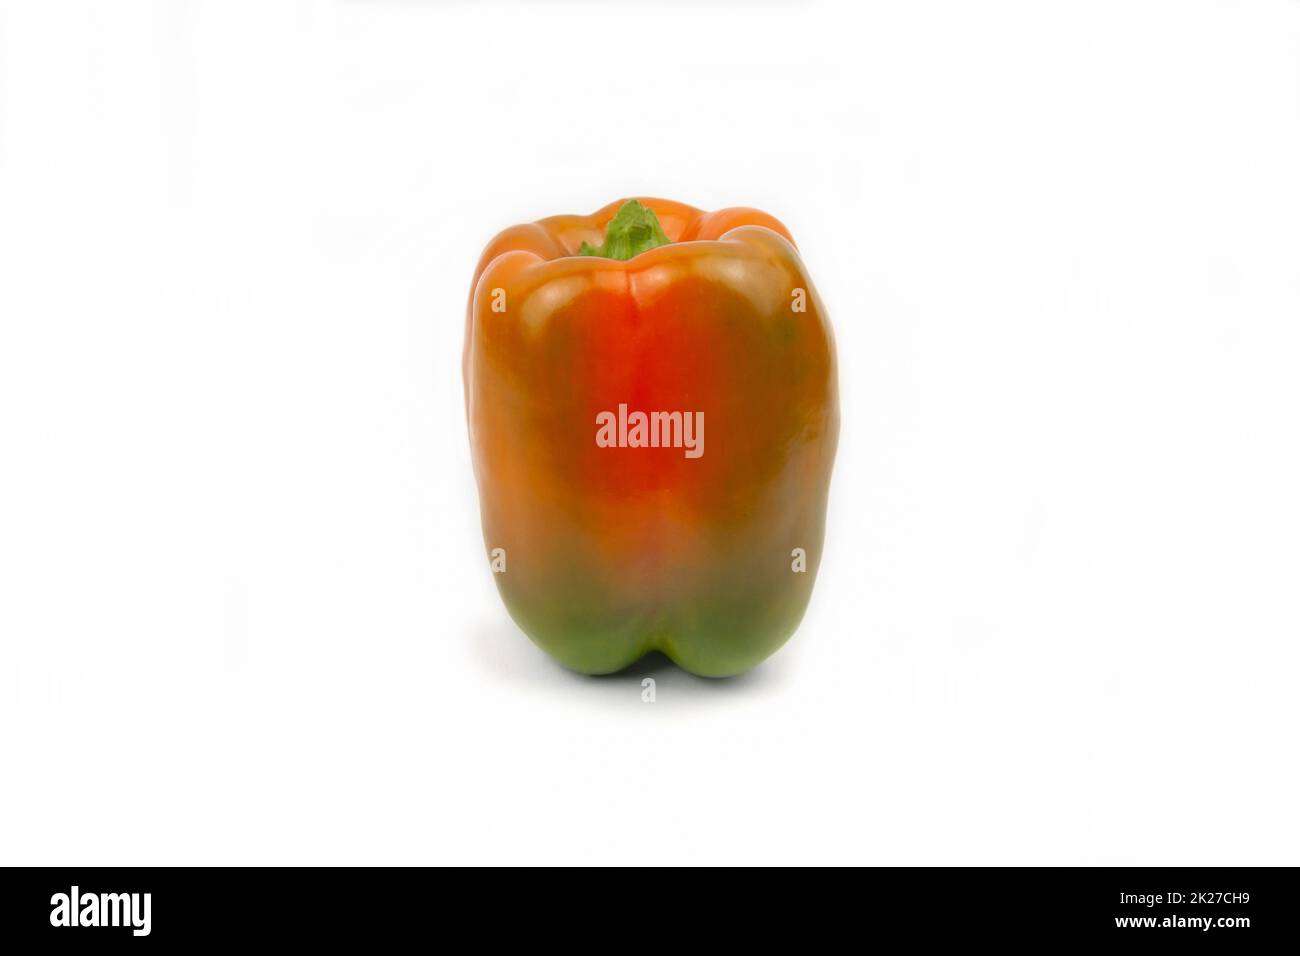 sweet orange pepper isolated on white background Stock Photo